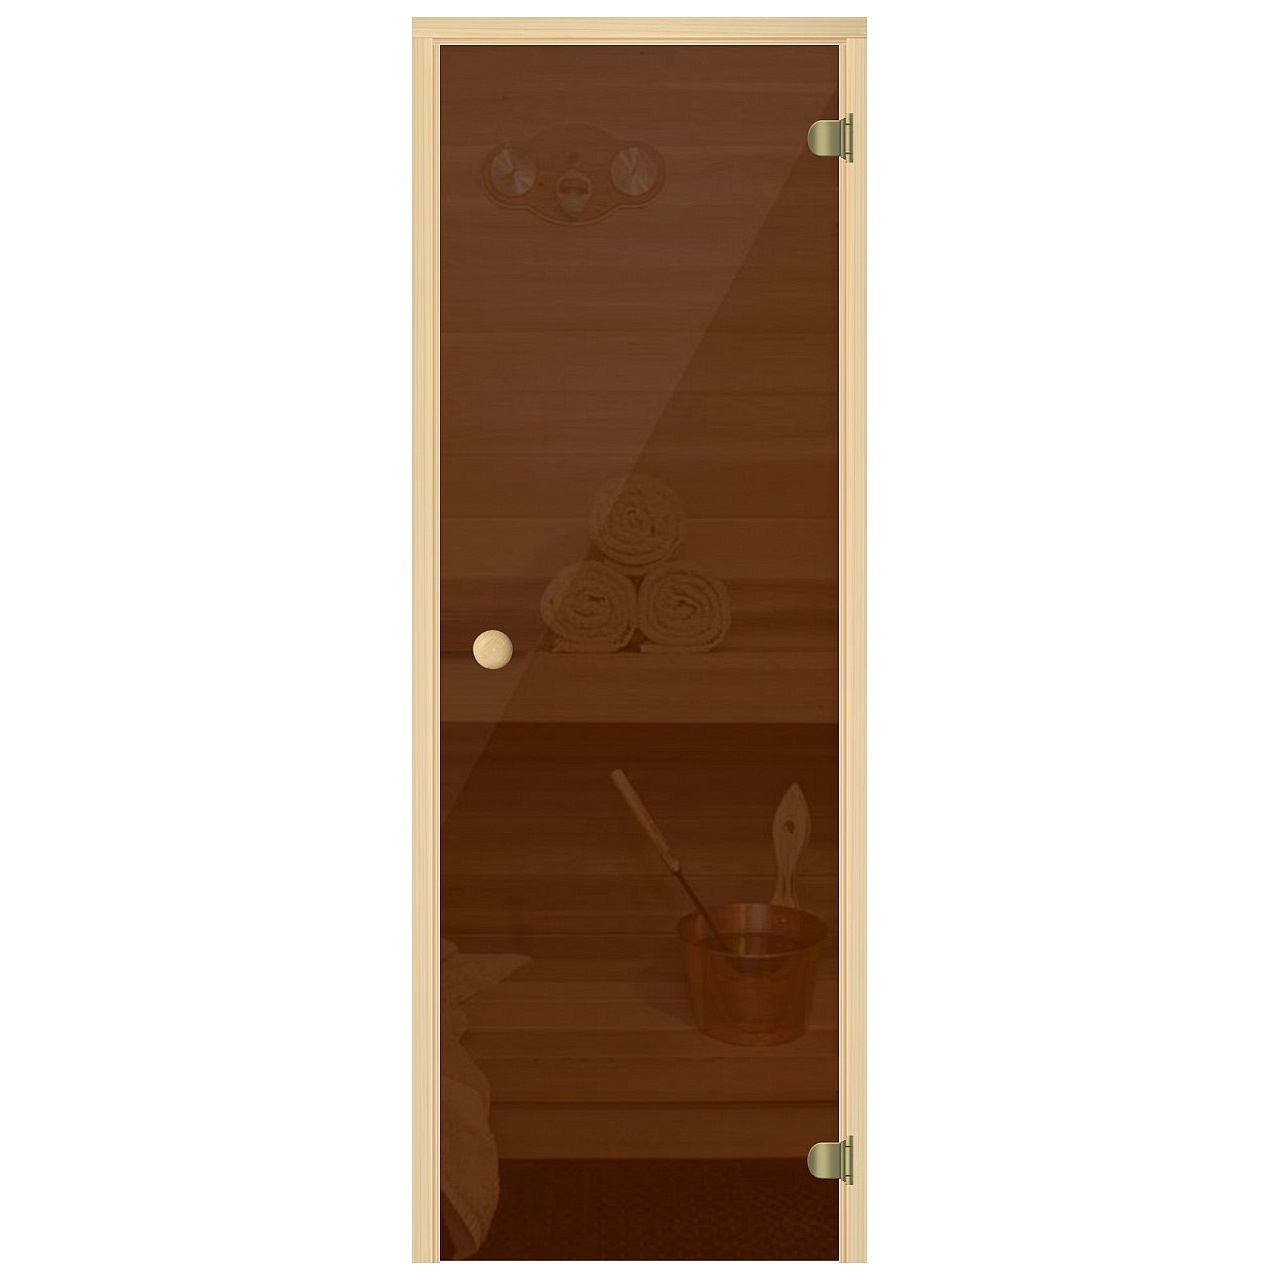 Дверь для саун "ЭКОНОМ" бронзовая, сосна, 6 мм 690*1890 превью слайда 1